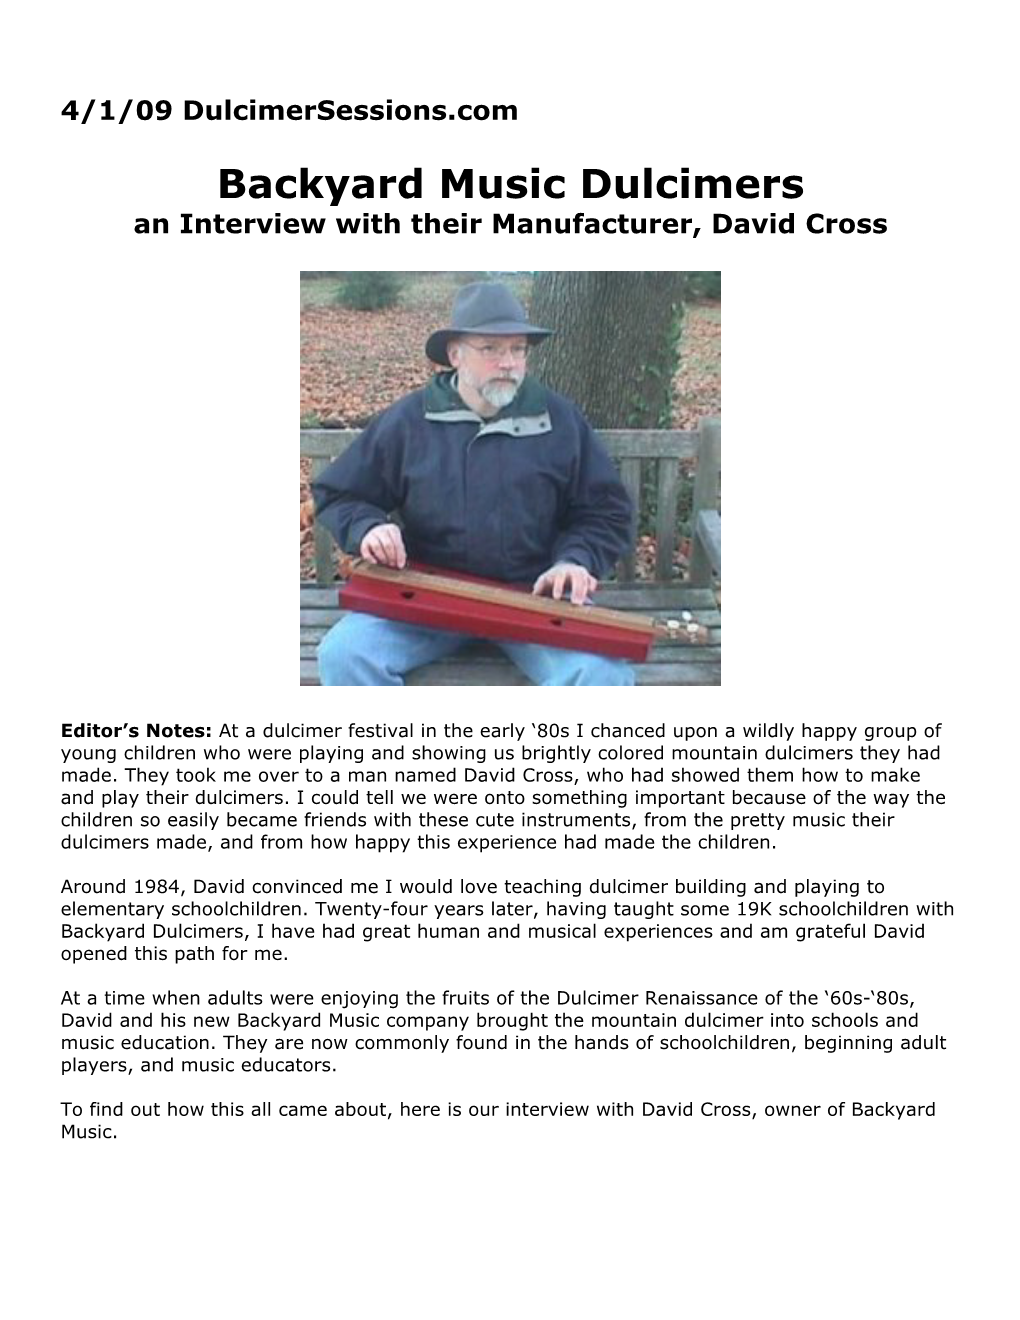 Backyard Music Dulcimers an Interview with Their Manufacturer, David Cross